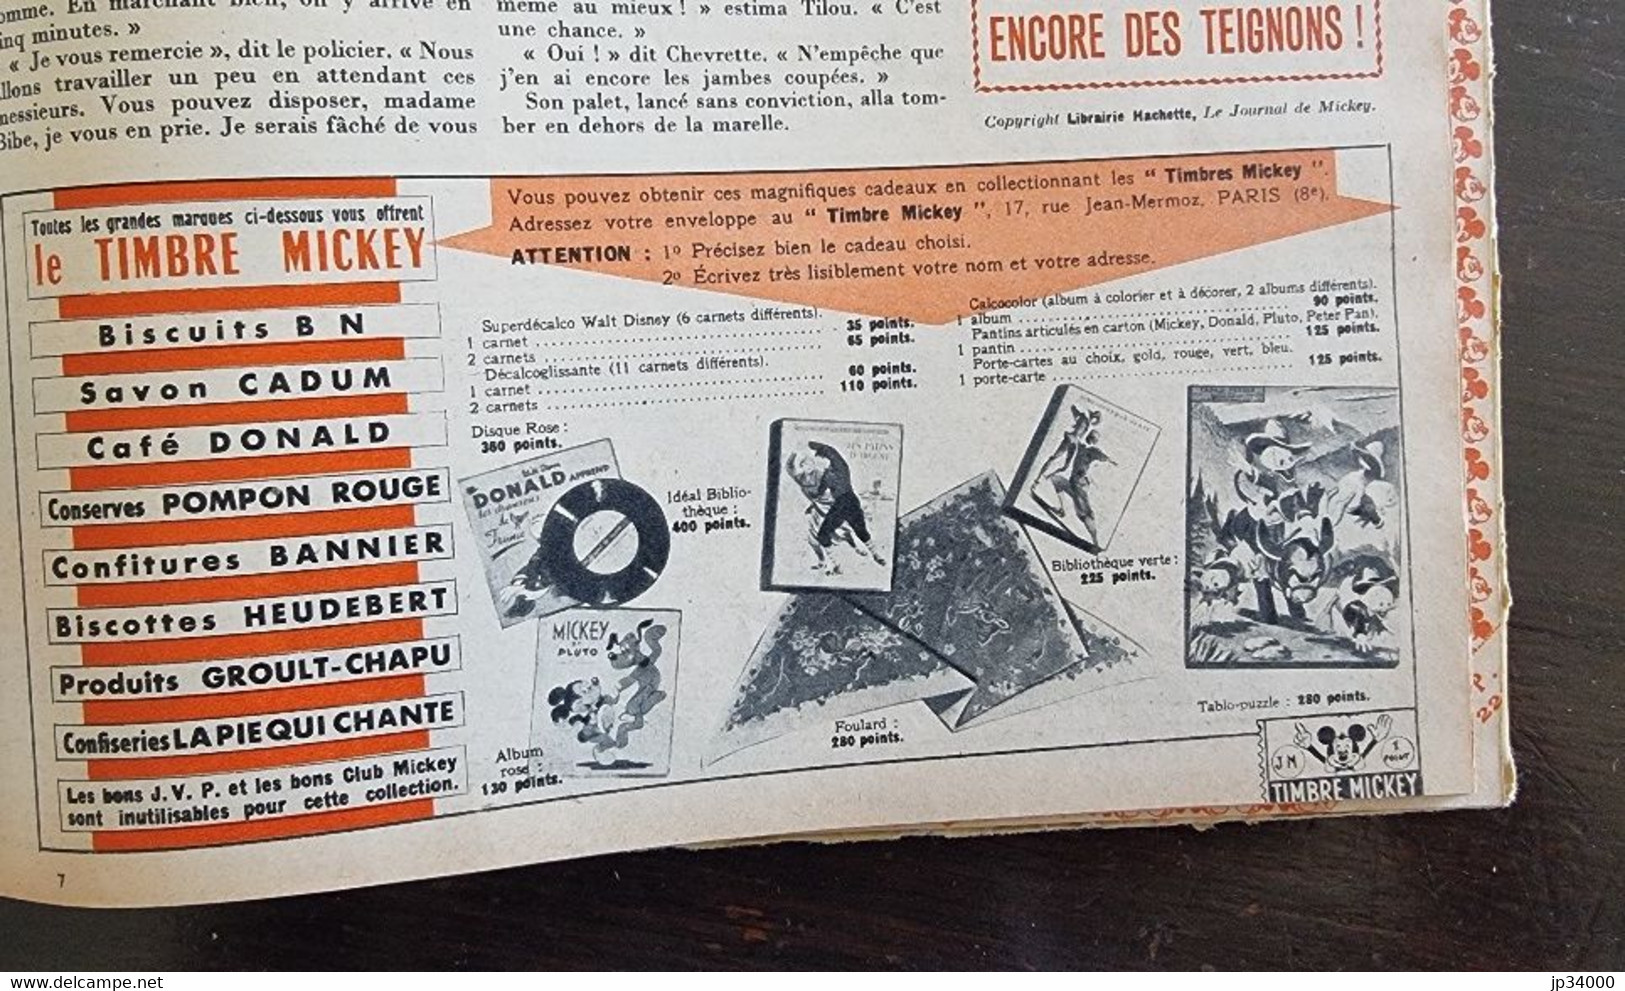 JOURNAL DE MICKEY album N°9 (numéros 209 à 234) publié en 1956